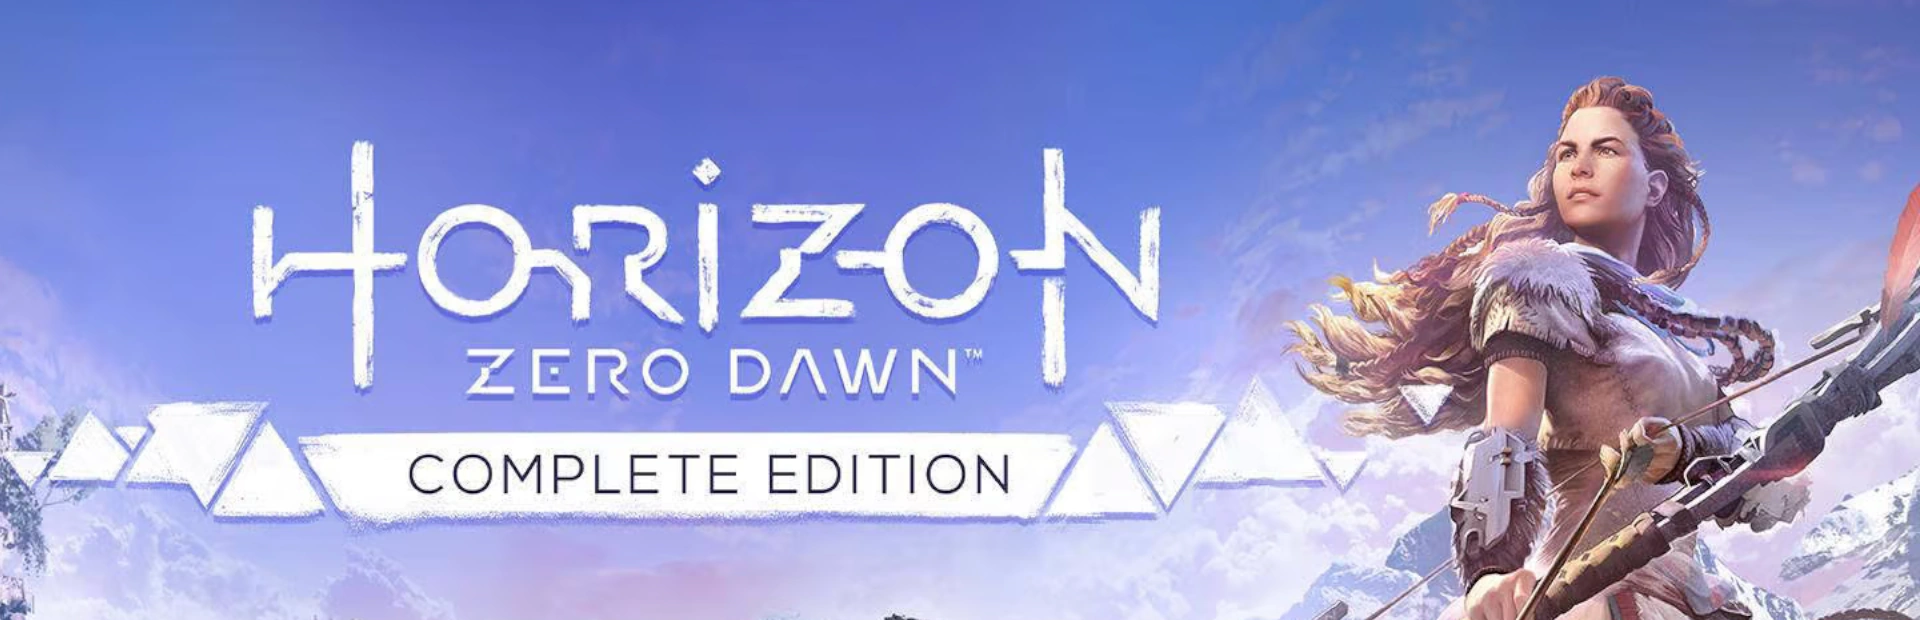 دانلود بازی Horizon Zero Dawn برای کامپیوتر | گیمباتو